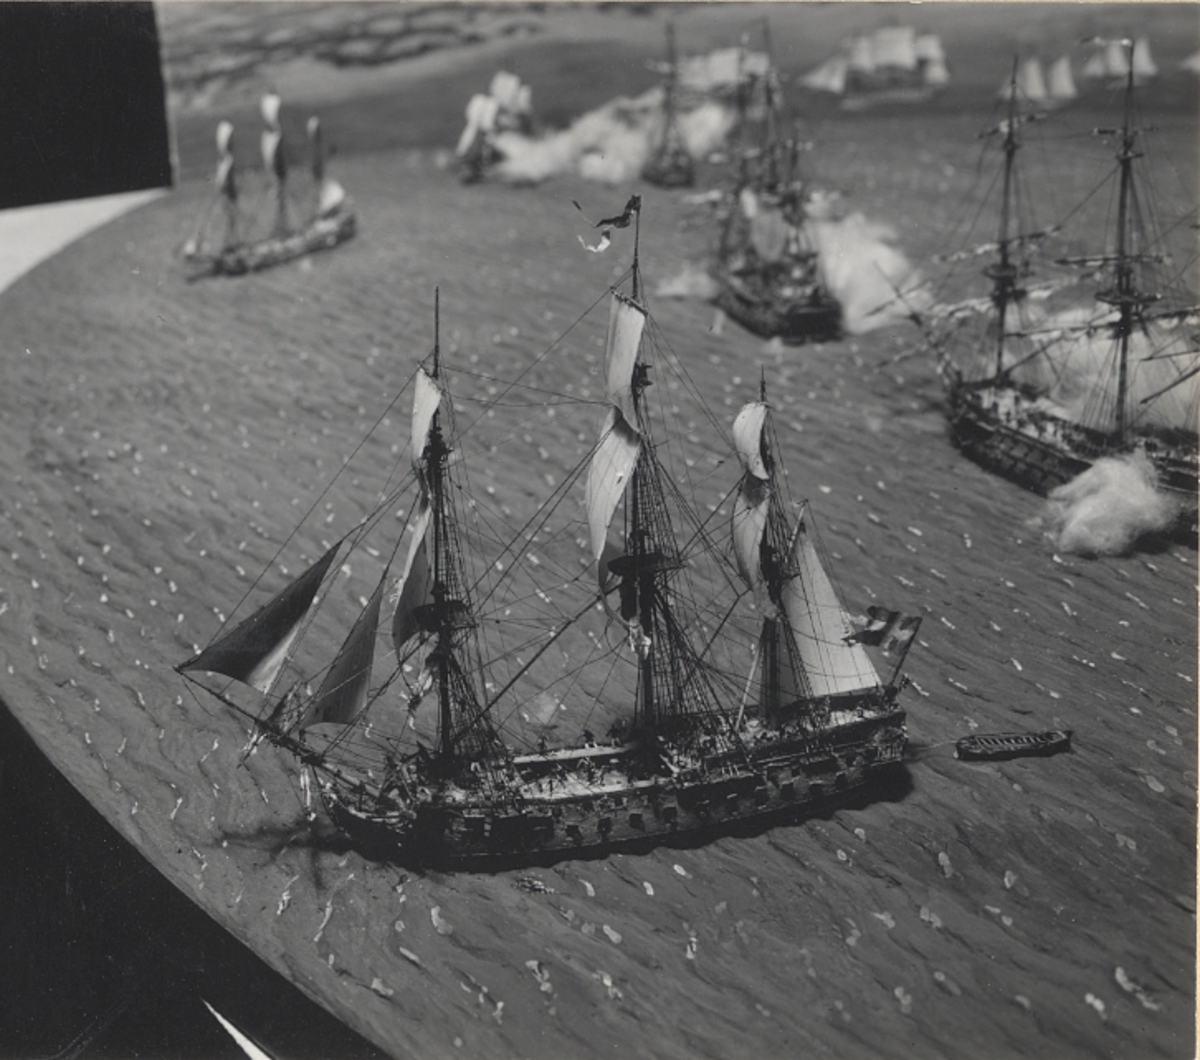 Dioramat visar inledningsskedet av den svenska utbrytningen ur Viborgska viken 3:e juli 1790, det s.k. Viborgska gatloppet.

De båda svenska flottorna utlöper på parallella kurser genom det västra utloppet. Örlogsflottans tätfartyg, 62-kanoners Dristigheten (1), har passerat den ryska linjen, medan systerfartyget Rättvisan (2) just bestryker de närmast liggande ryska fartygen, Svjatoj Pjotr (6) och Vseslav (7), med långskeppseld. De övriga ryska fartygen är Panteleimon (5) och Ne Tron' Menia (8). Huvuddelen av ryska flottan ligger i stora inloppet (15). En svensk fregatt, 44-kanoners Gripen (3), och ett linjeskepp, 70-kanoners Adolf Fredrik (4), närmar sig den ryska linjen och huvudstyrkan (14) kommer efter.

Närmare Krysserort (13) passerar de första enheterna ur skärgårdsflottan (12), hämmema Styrbjörn (9) och turuma Norden (10), den ryska linjen där fregatten Pobeditel (11) skadats av deras eld.

Dioramat är komponerat och tillverkat av kapten Patrik de Laval 1960-1964. Fonden och sjön har utförts av överstelöjtnant Georg de Laval.
1. DRISTIGHETEN (överstelöjnant Johan Puke), 62-kanoners linjeskepp, örlogsflottans tätfartyg, har lyckligt geombrutit den ryska spärren.
2. RÄTTVISAN (överstelöjnant Wollyn), ett av Dristighetens 9 systerskepp, bestryker långskepps med sina bredsidor Vseslav om styrbord och Svjatoj Pjotr om babord.
3. GRIPEN (kapten Södervall), svår fregatt, 44 kanoner.
4. ADOLF FREDRIK, chefens för avantgardet konteramiral Modée flaggskepp, 70 kanoner.
5. PANTELEIMON, ryskt 74-kanoners linjeskepp ligger för ankar och ankarspring.
6. SVJATOJ PJOTR, ryskt 74-kanoners linjeskepp, konteramiral Povalisjins flaggskepp. Backen är efter Dristighetens och Rättvisans bredsidor belamrad med demonterade kanoner, söndriga lavetter samt döda och sårade.
7. VSESLAV, ryskt 74-kanoners linjeskepp: lanternan och akterspegelns fönster sönderskjutna.
8. NE TRON' MENIA, ryskt 66-kanoners linjeskepp. På skansdäcket (längst akteröver) stupar fartygschefen för Rättvisans kulor.
9. STYRBJÖRN (överstelöjtnant Viktor von Stedingk) skärgårdsfregatt (Hememma) 32 kanoner (därav 26 st 36-pundingar), skärgårdsflottans tätfartyg har genomfört utbrytningen efter framgångsrikt anfall mot fregatten Pobeditel.
10. NORDEN (kapten Olander), skärgårdsfregatt (Turuma), 24 kanoner, 24 nickor, vilar på årorna och avger bredsida.
11. POBEDITEL, ryskt bombfartyg (fregatt), har redan fått fockmasten avskjuten.
12. Svenska skärgårdsflottan (kallad Arméns flotta): 6 skärgårdsfregatter (därav 2 framme på "scenen"), 20 galärer, 130 kanonslupar och -jollar, ca 20 kanonbarkasser m.m.
13. Krysserort, den udde som i väster begränsar västra farleden mot Viborg.
14. Svenska örlogsflottan: 20 linjeskepp, 8 svåra och 5 lätta fregatter (därav 3 skepp och 1 fregatt framme på "scenen").
15. Kulta Matala och 16. Repie grund, de grundbankar, som skiljer västra farleden mot Viborg från den stora - mellersta - farleden.
17.  Det aktersta av Povalisjins fem linjeskepp.
18. Den ryska huvudflottan: c:a 25 linjeskepp (därav 7 tredäckare med 100 kanoner eller däröver) och 10 fregatter för ankar i den stora farleden, som den spärrat i nära en månad.

Alla sjöofficersgrader - lägre än konteramiral - voro vid denna tid desamma som vid armén.
Källa: Jonas Berg